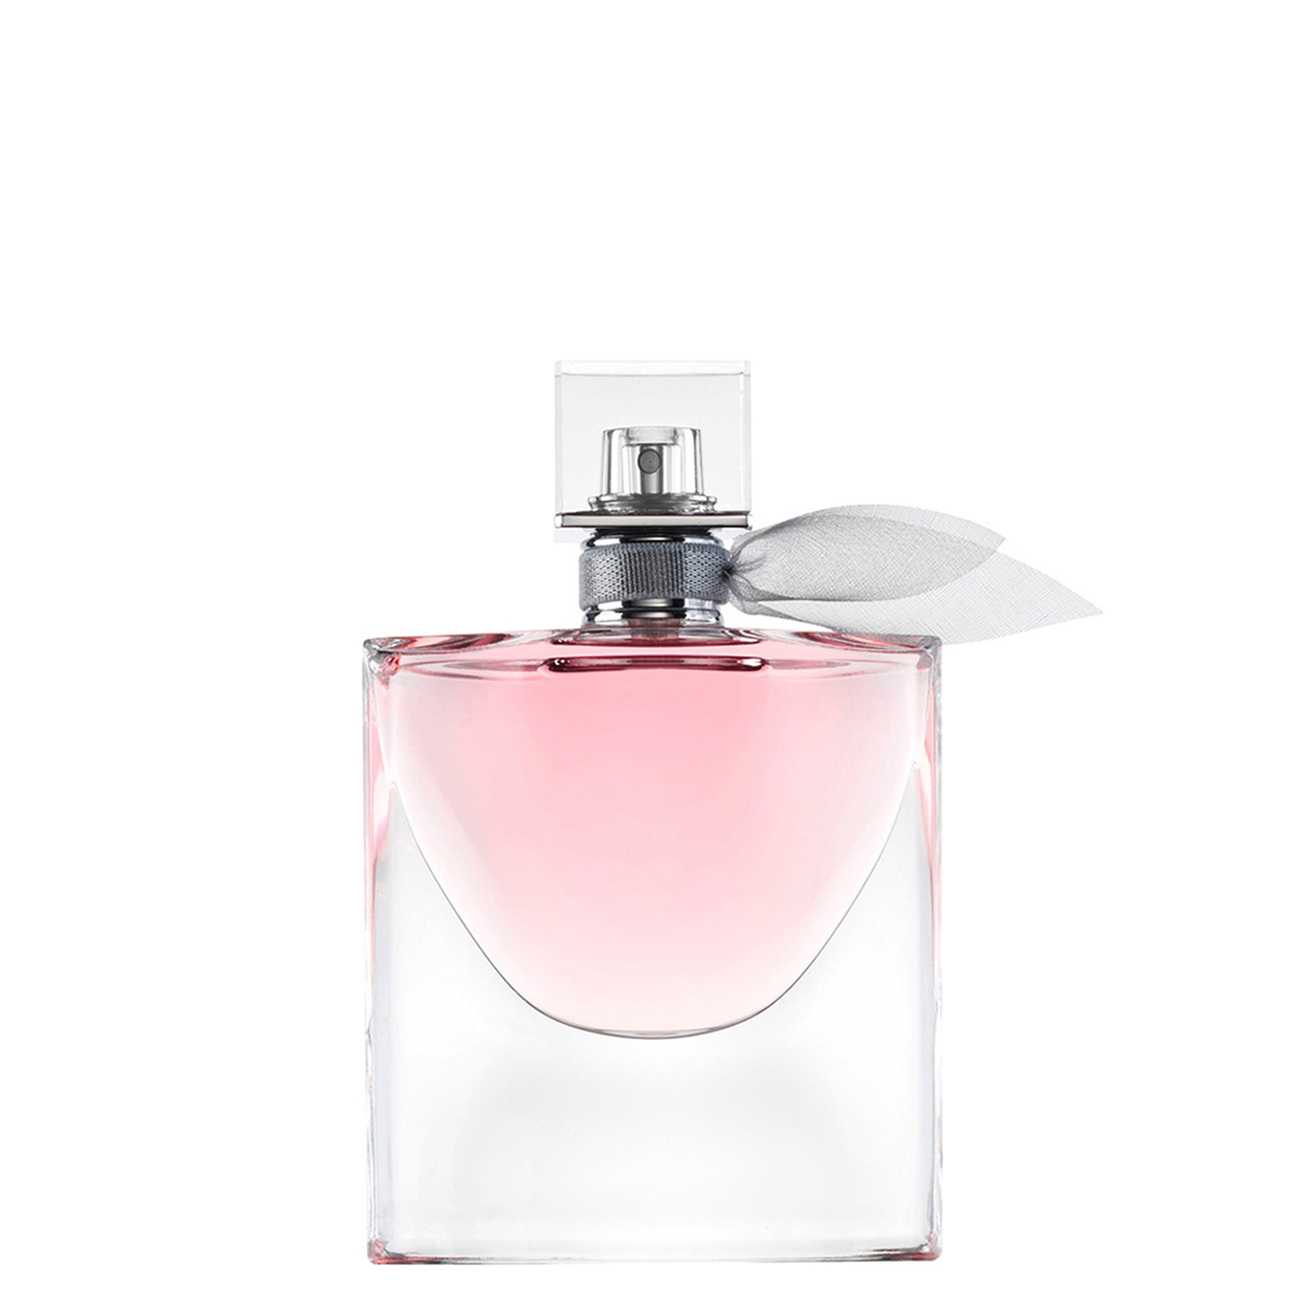 Apa de Parfum Lancôme LA VIE EST BELLE 50ml cu comanda online